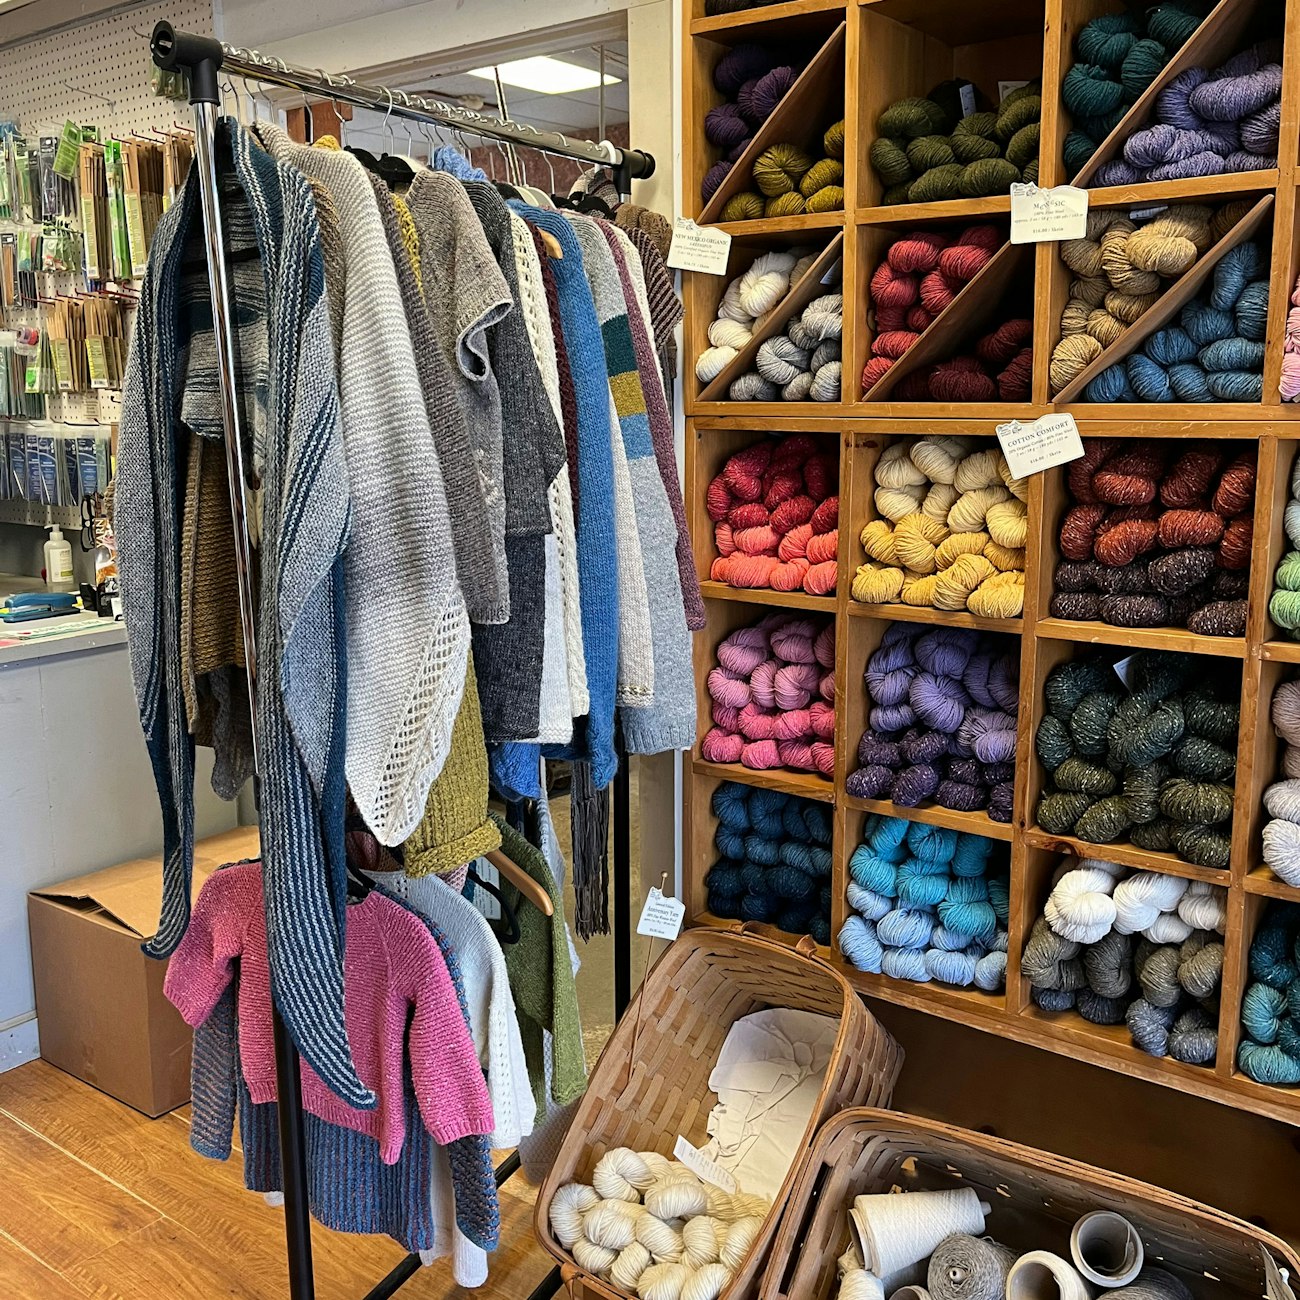 Knitwear on rack, hanks of yarn in cubbies